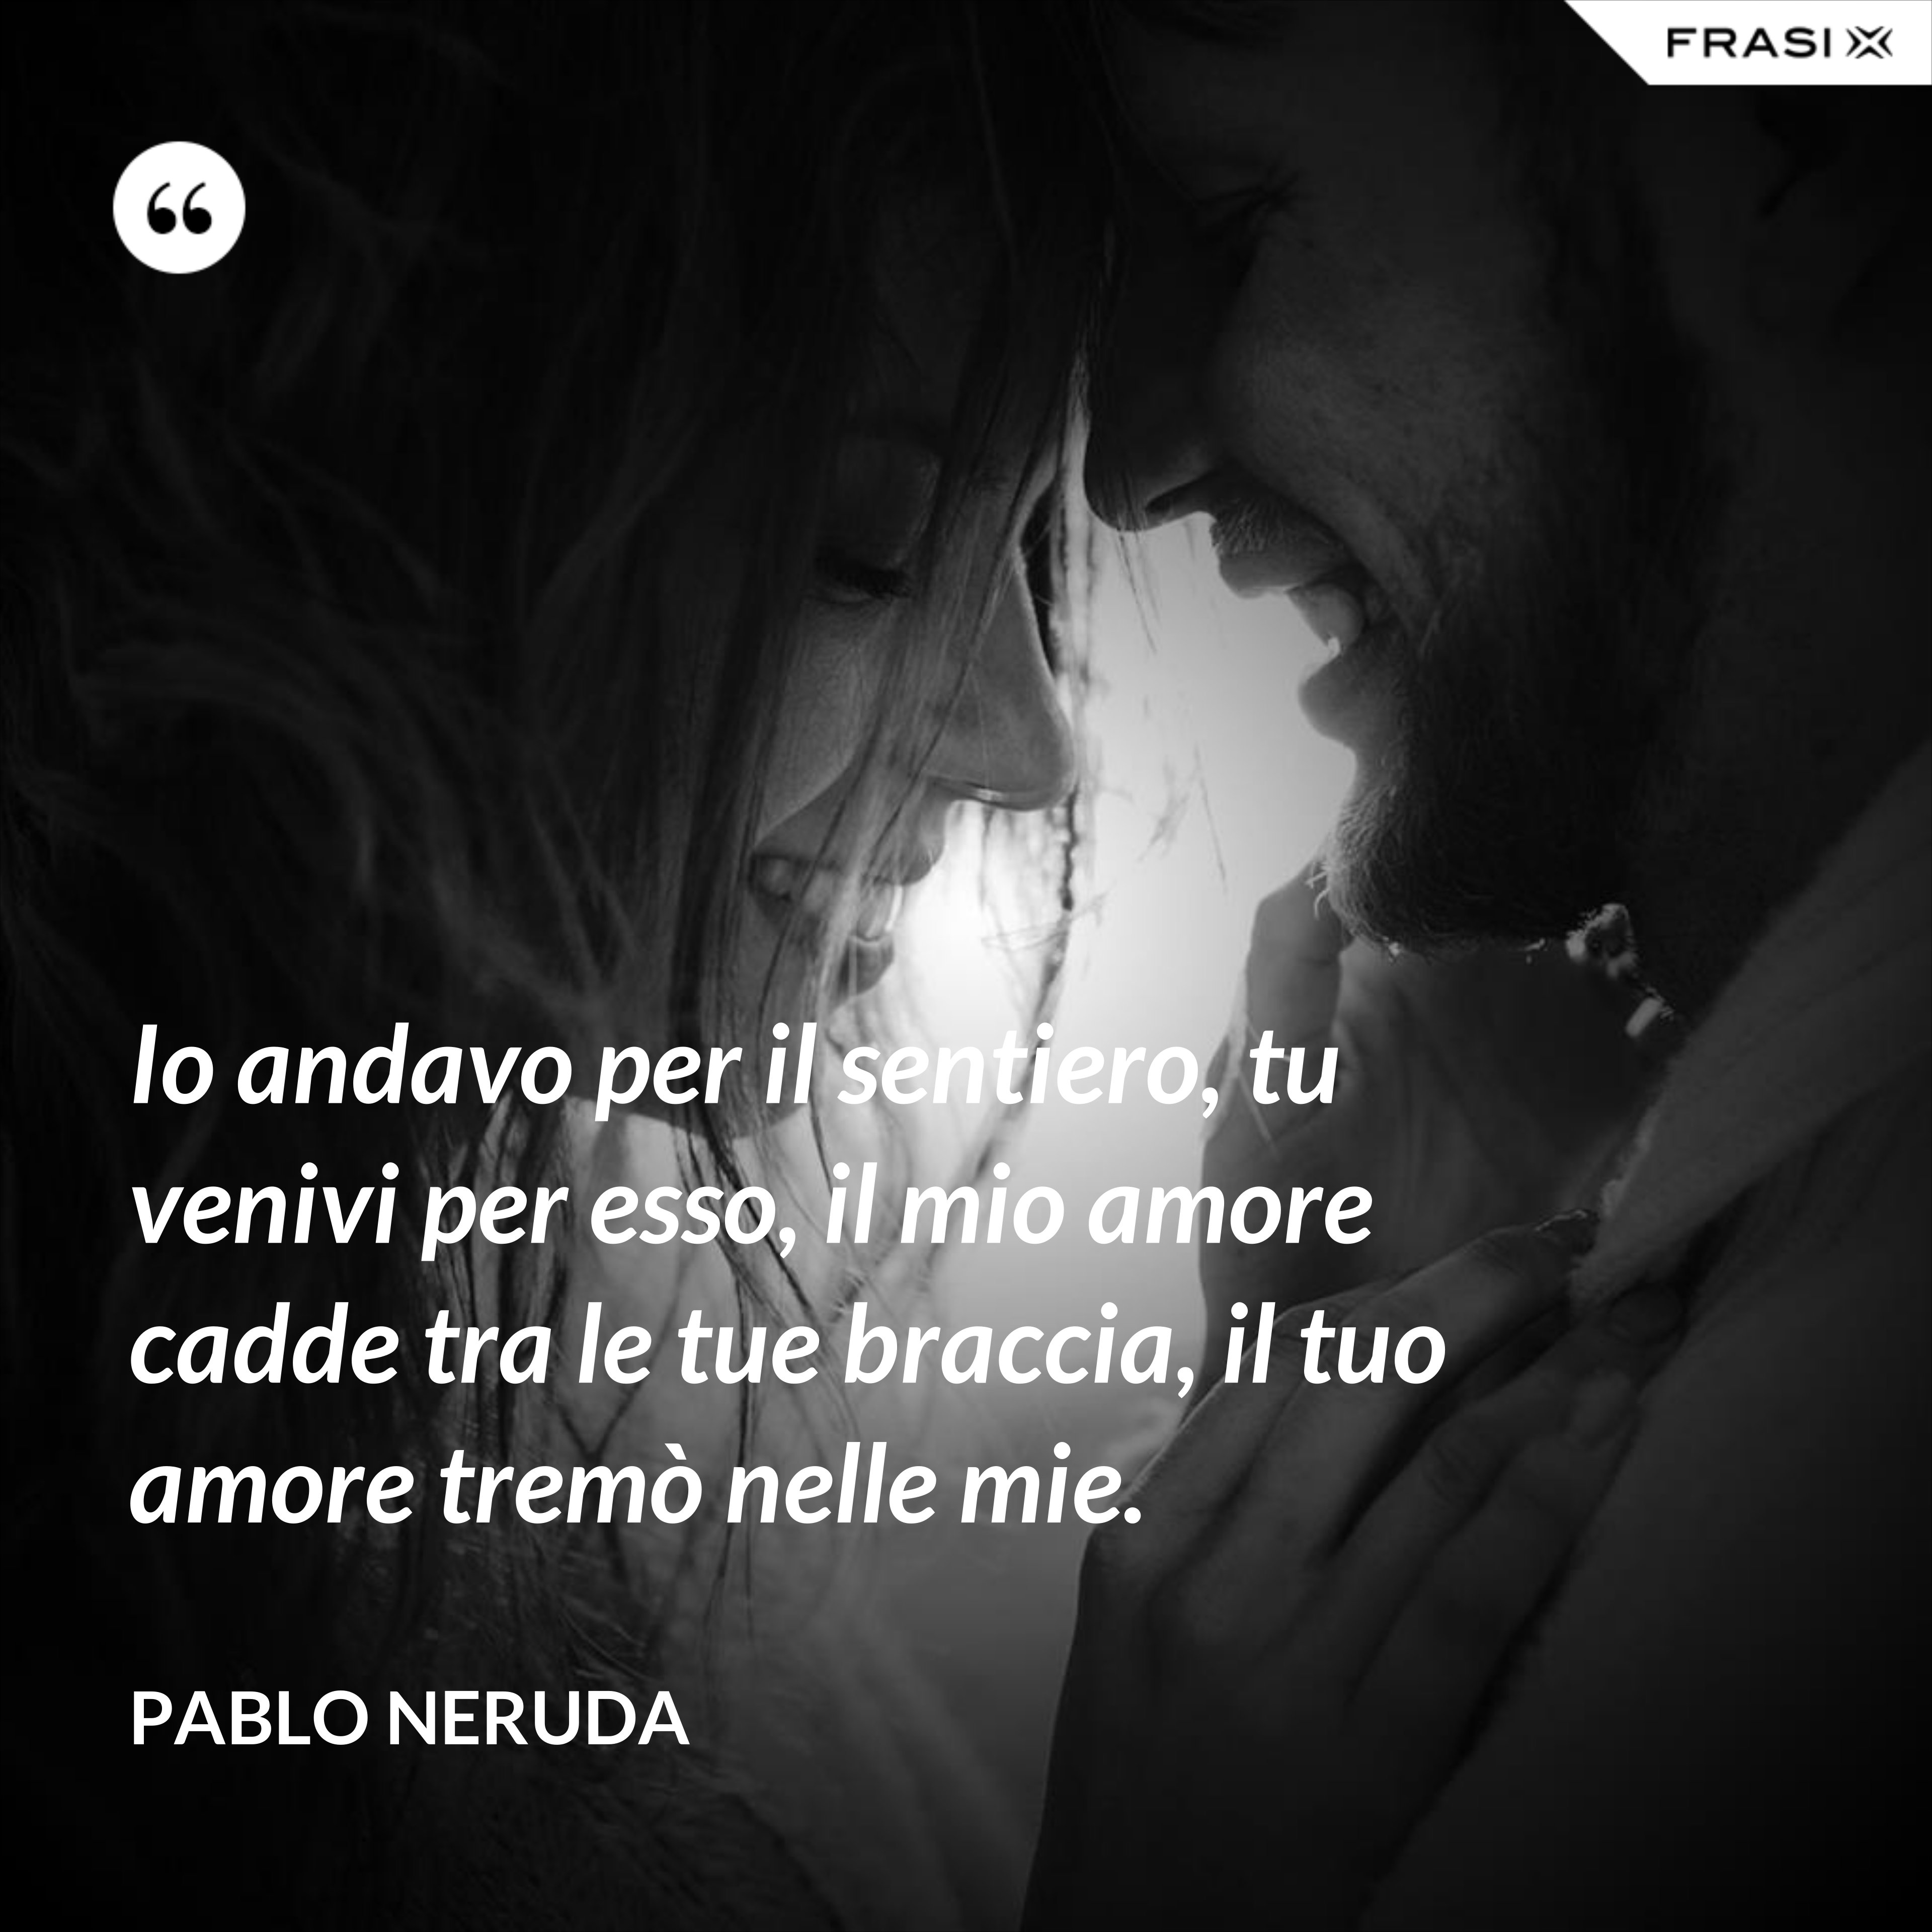 Io andavo per il sentiero, tu venivi per esso, il mio amore cadde tra le tue braccia, il tuo amore tremò nelle mie. - Pablo Neruda